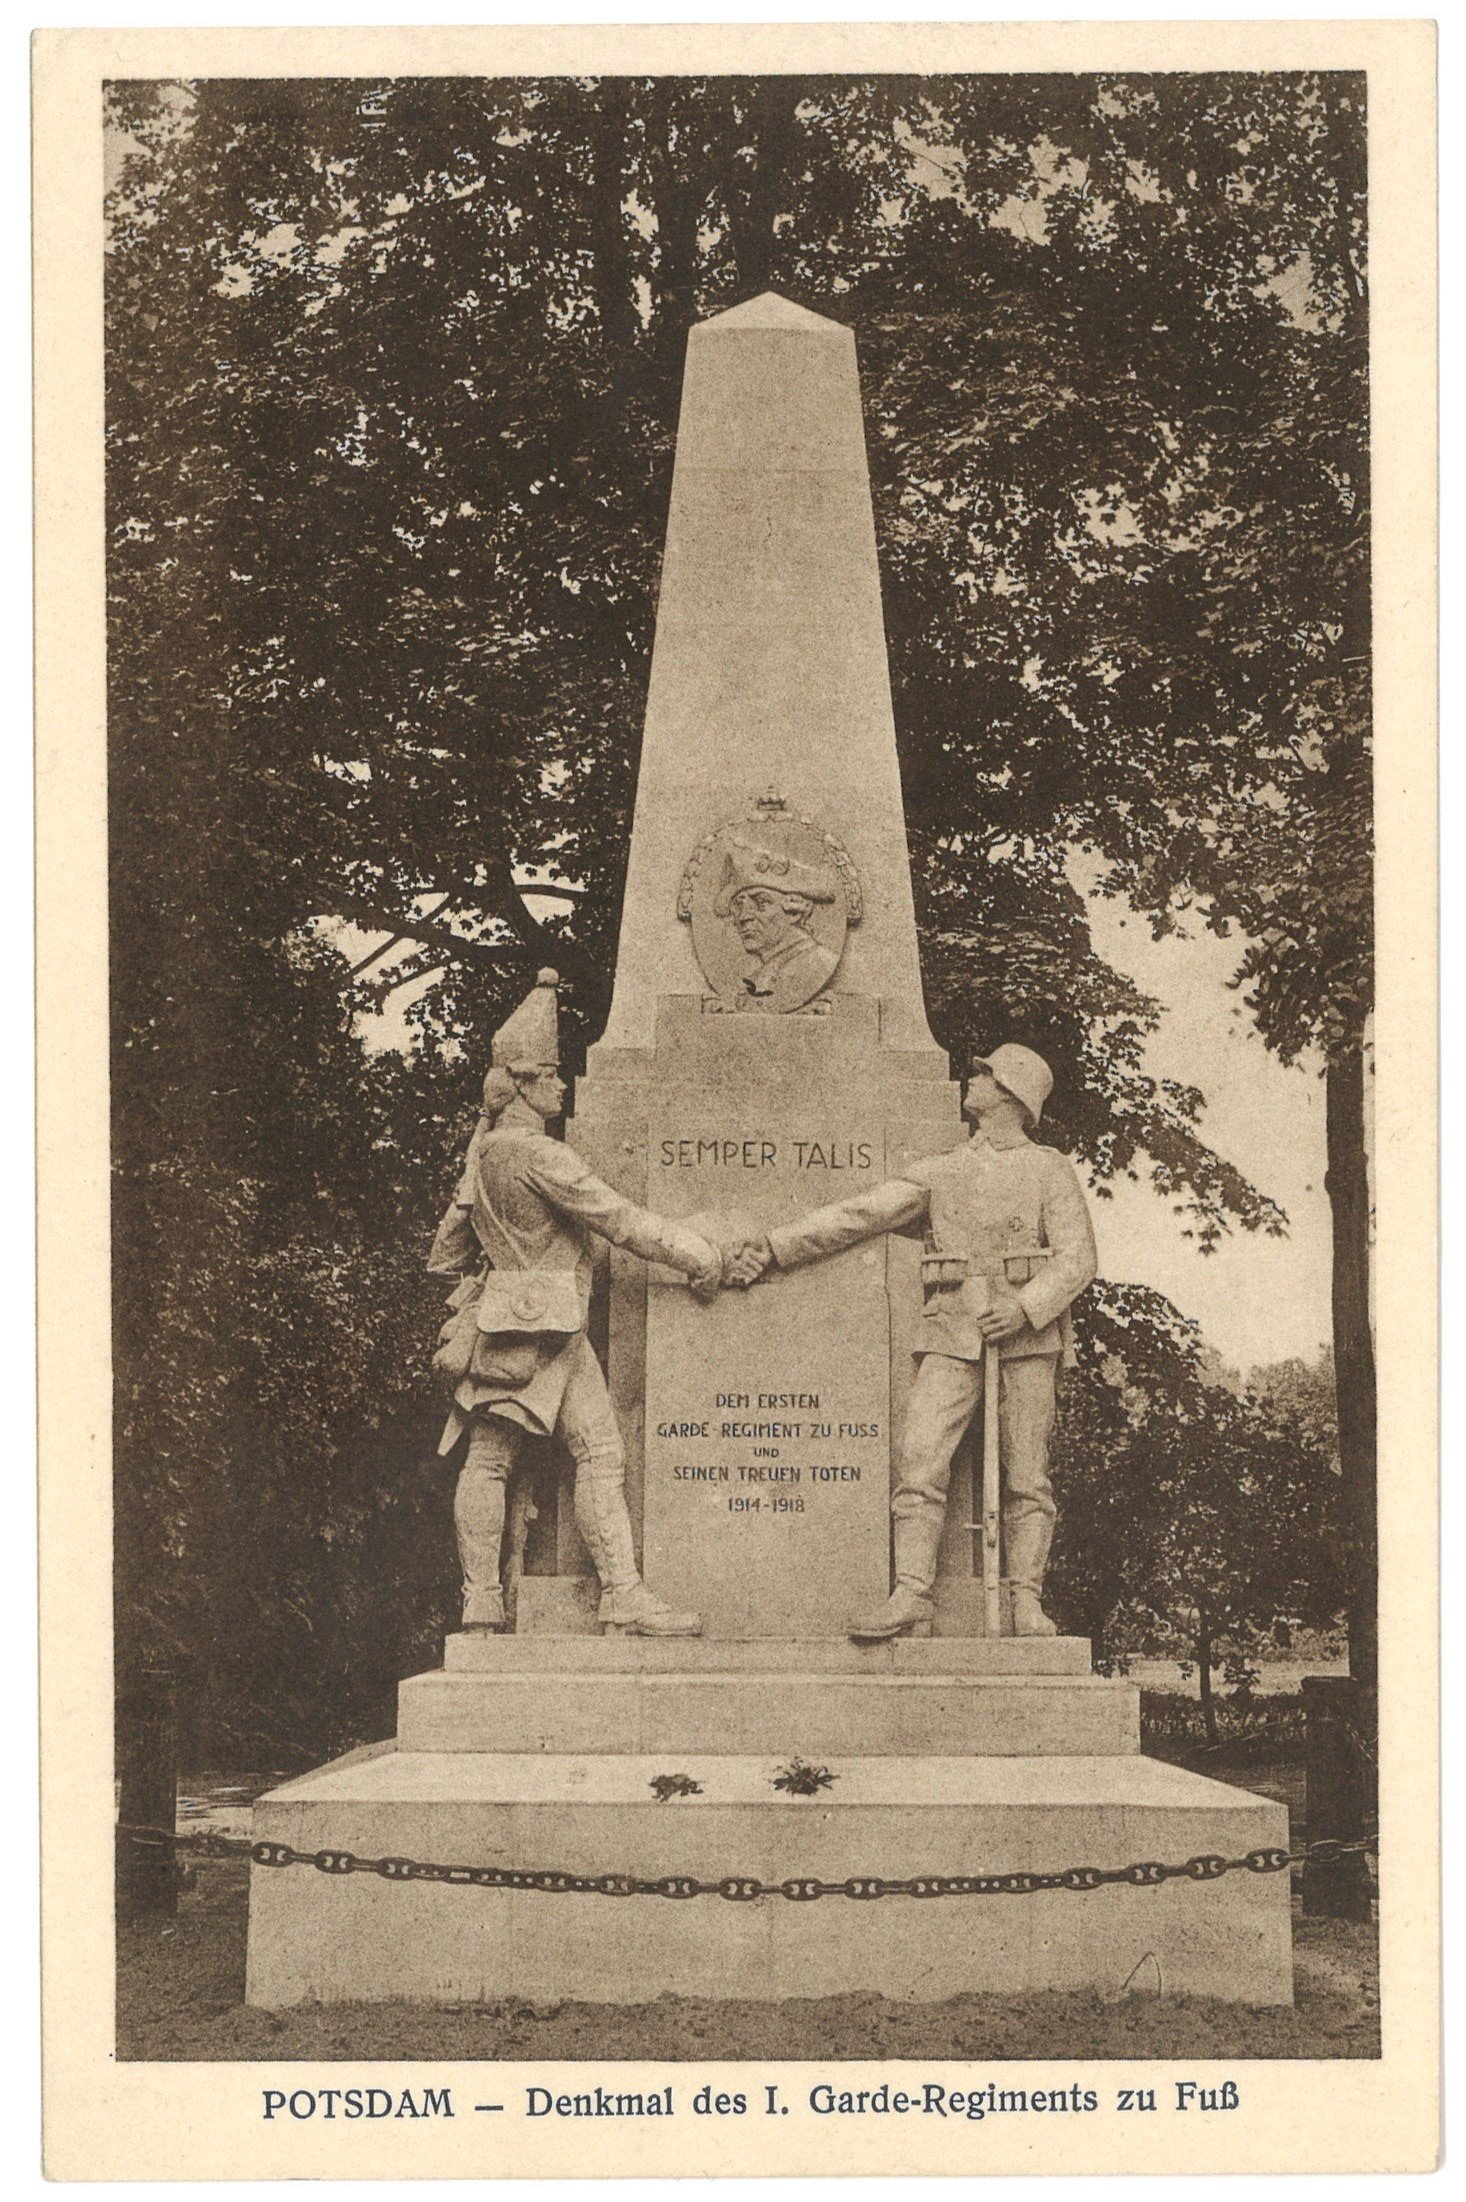 Potsdam: Denkmal des 1. Garde-Regiments zu Fuß (Landesgeschichtliche Vereinigung für die Mark Brandenburg e.V. CC BY)